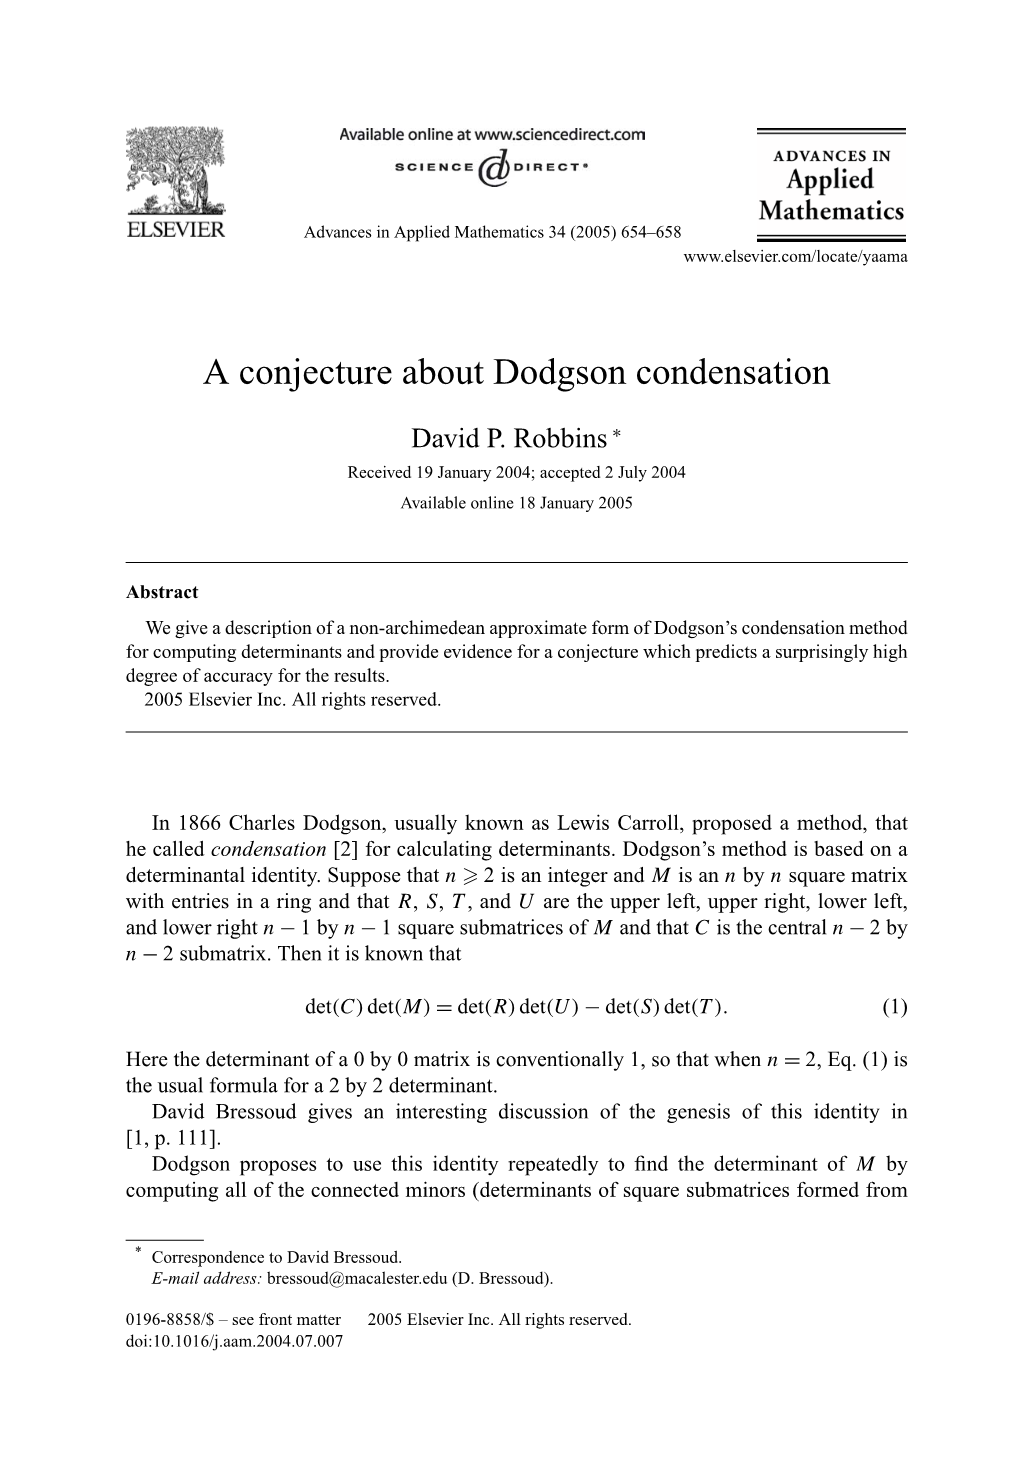 A Conjecture About Dodgson Condensation